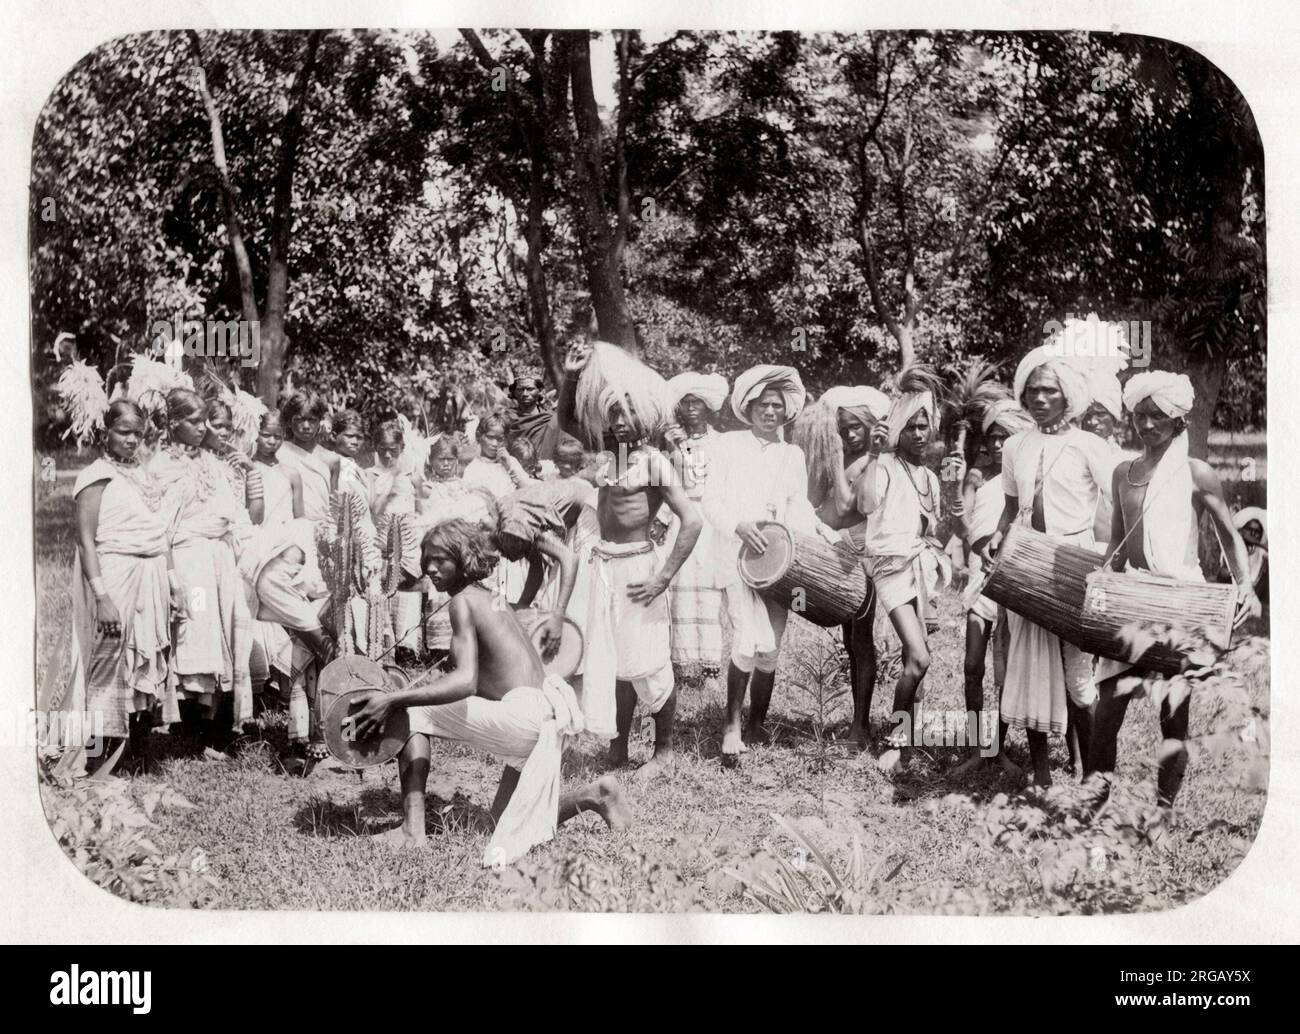 Photographie vintage du 19th siècle : danseuses tribales Kola, peuples de Munda, Inde du Nord-est. Banque D'Images